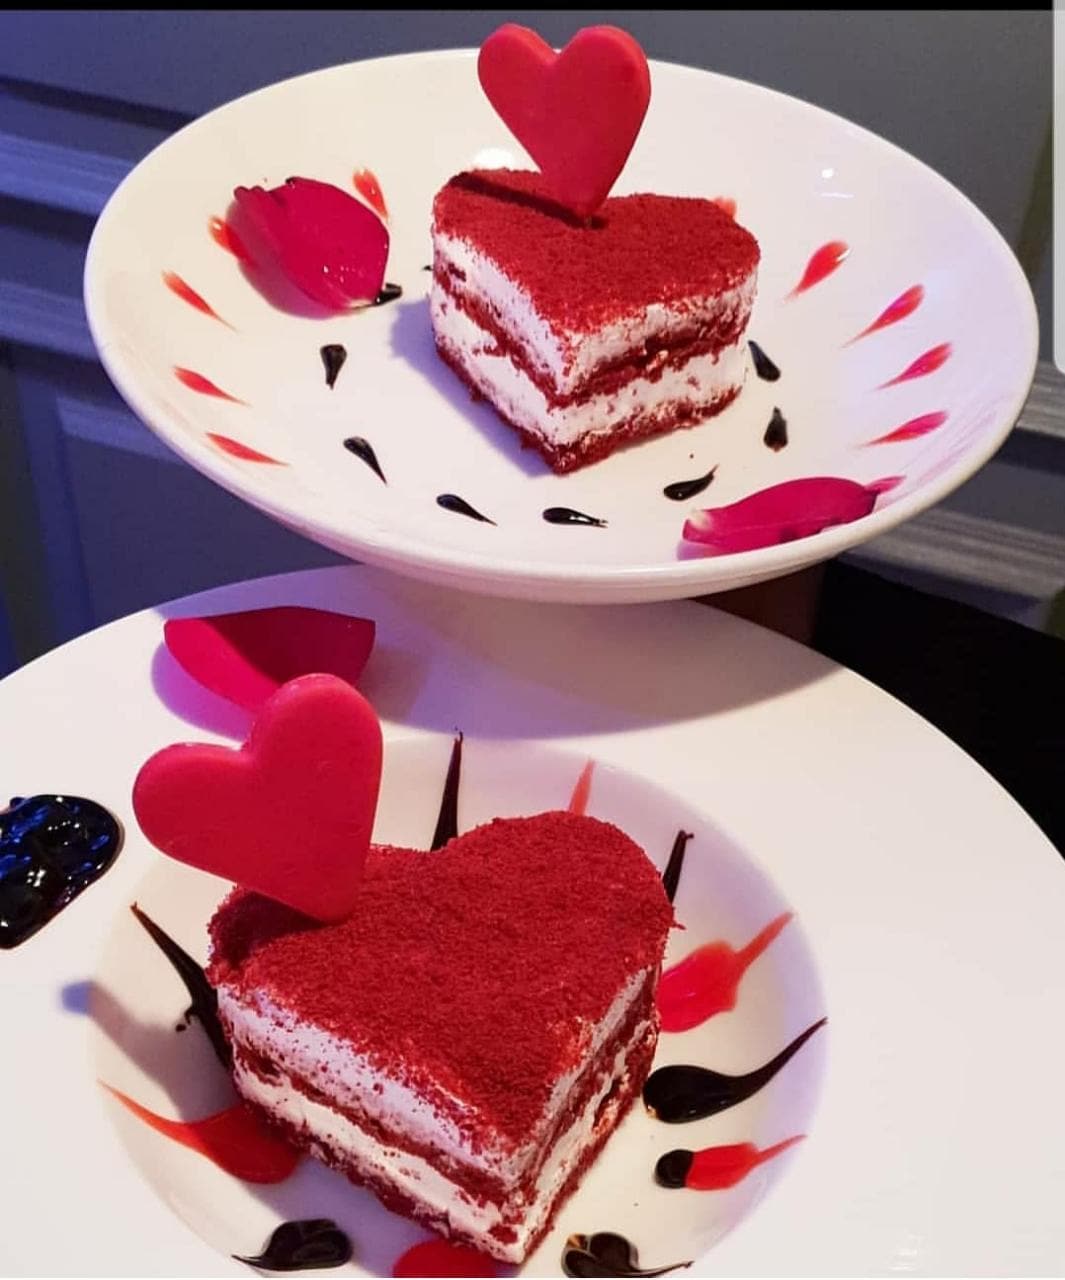 Royal Red Velvet Mini Cake 150 Gm - Red Velvet - Cake - Online Bakers  Indore, Mahalaxmi Nagar, Indore, Madhya Pradesh